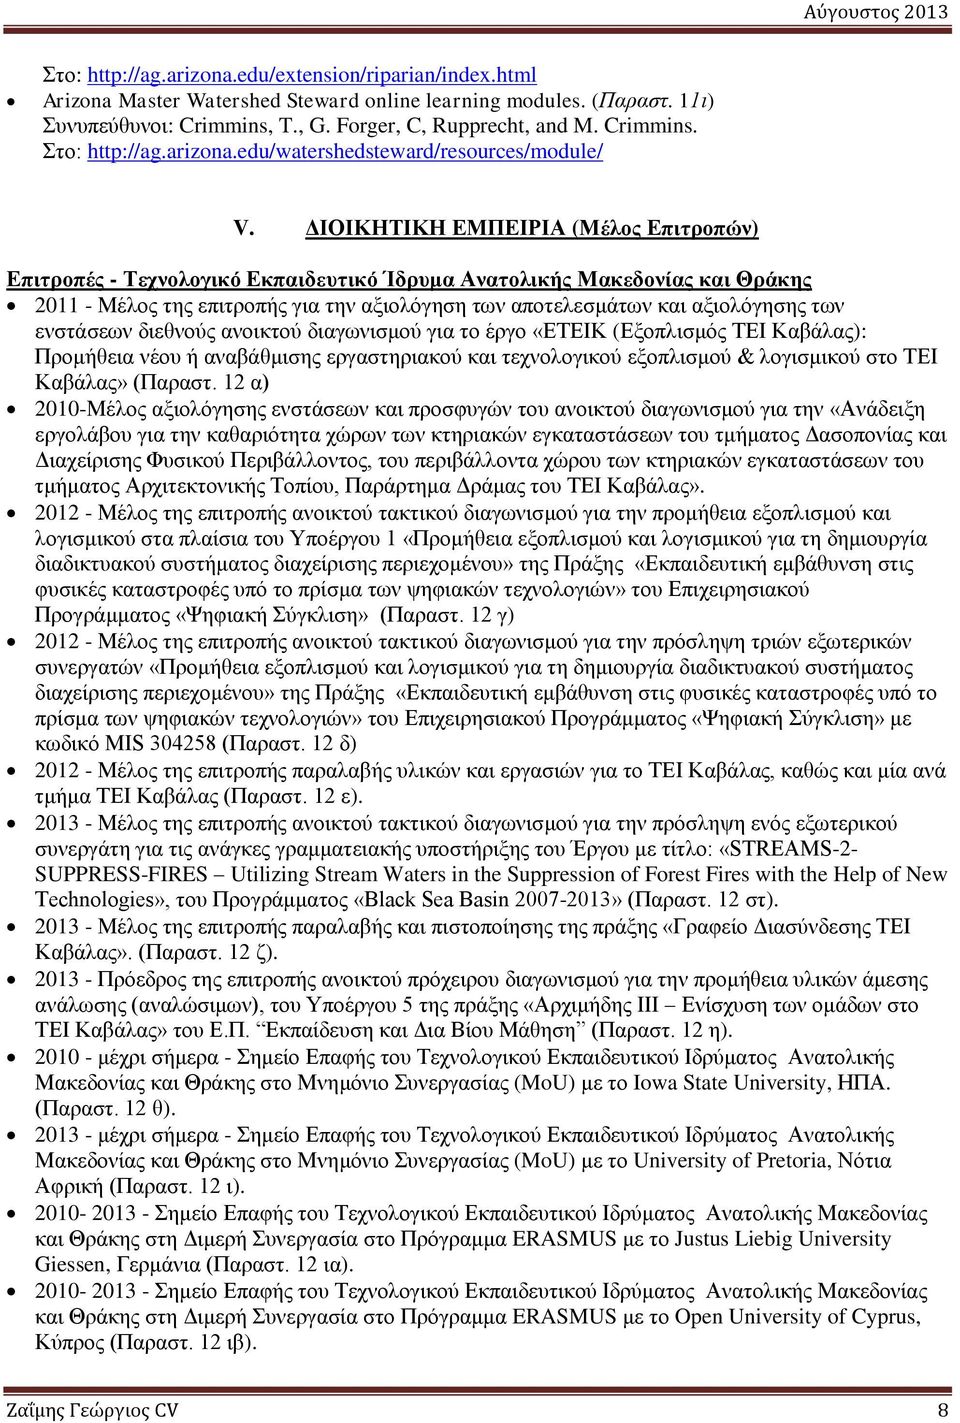 ΔΙΟΙΚΗΤΙΚΗ ΕΜΠΕΙΡΙΑ (Μέλος Επιτροπών) Επιτροπές - Τεχνολογικό Εκπαιδευτικό Ίδρυμα Ανατολικής Μακεδονίας και Θράκης 2011 - Μέλος της επιτροπής για την αξιολόγηση των αποτελεσμάτων και αξιολόγησης των